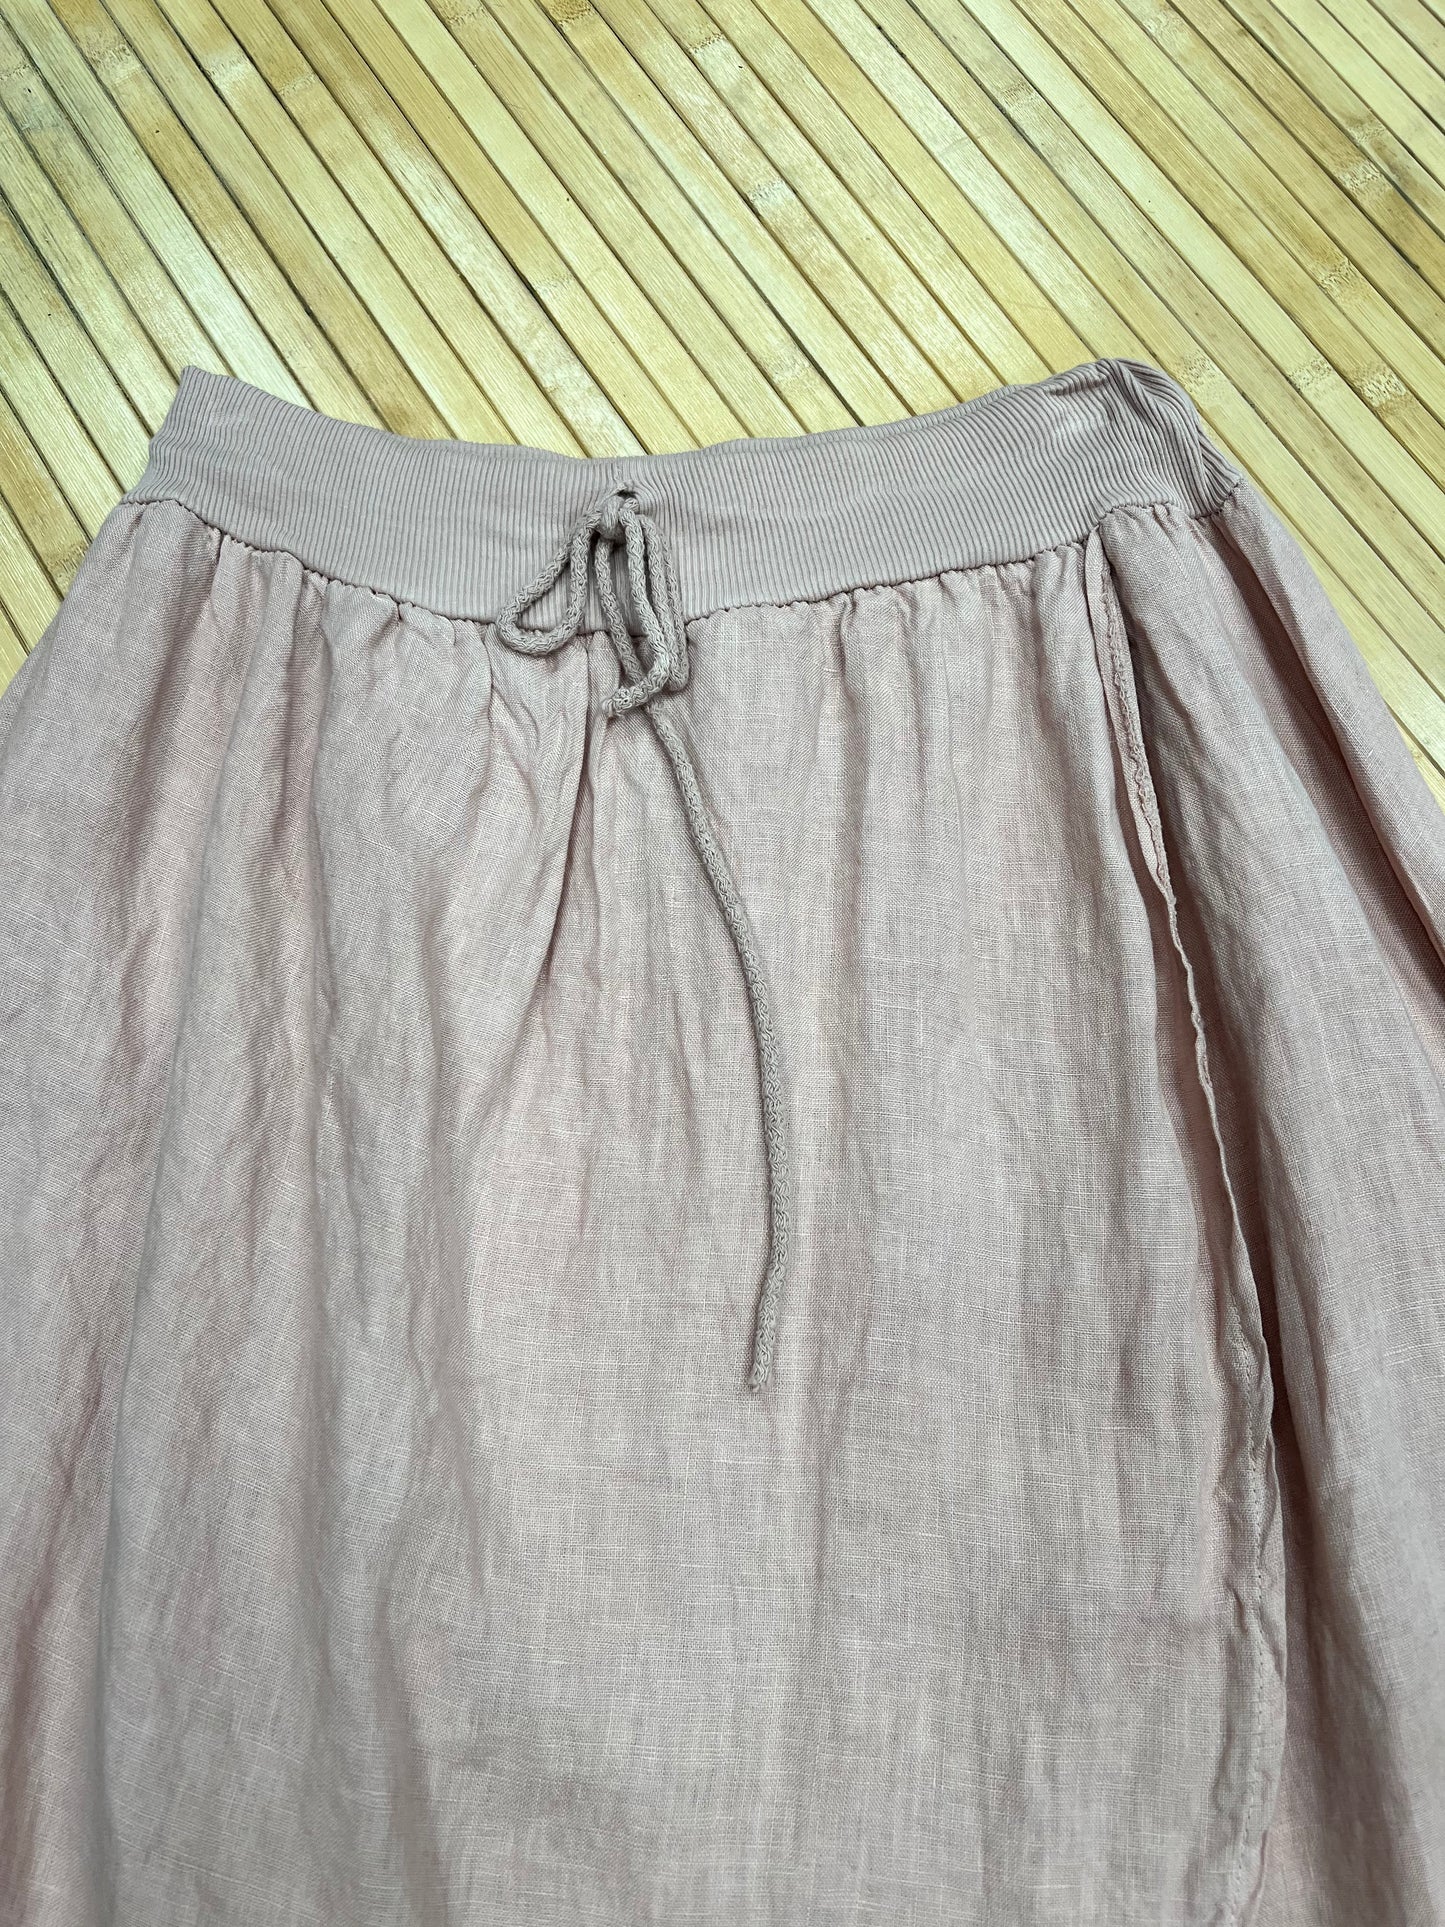 Italian linen skirt pant.